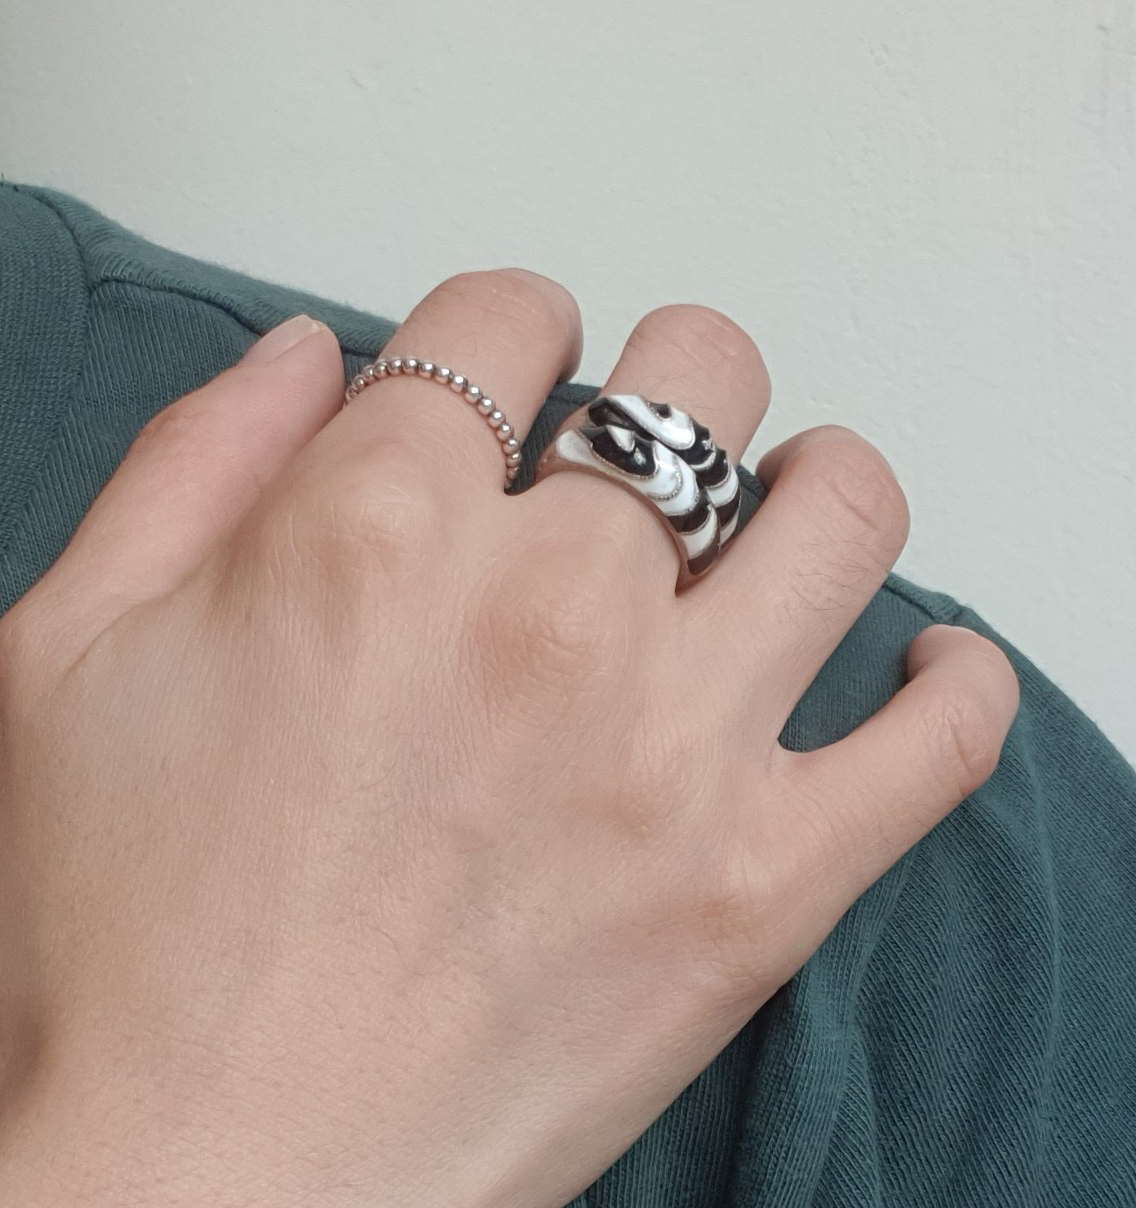 [칠보공방]흑백 칠보 가락지 세트 수공예 경주 칠보 공방에서 직접 만든 반지